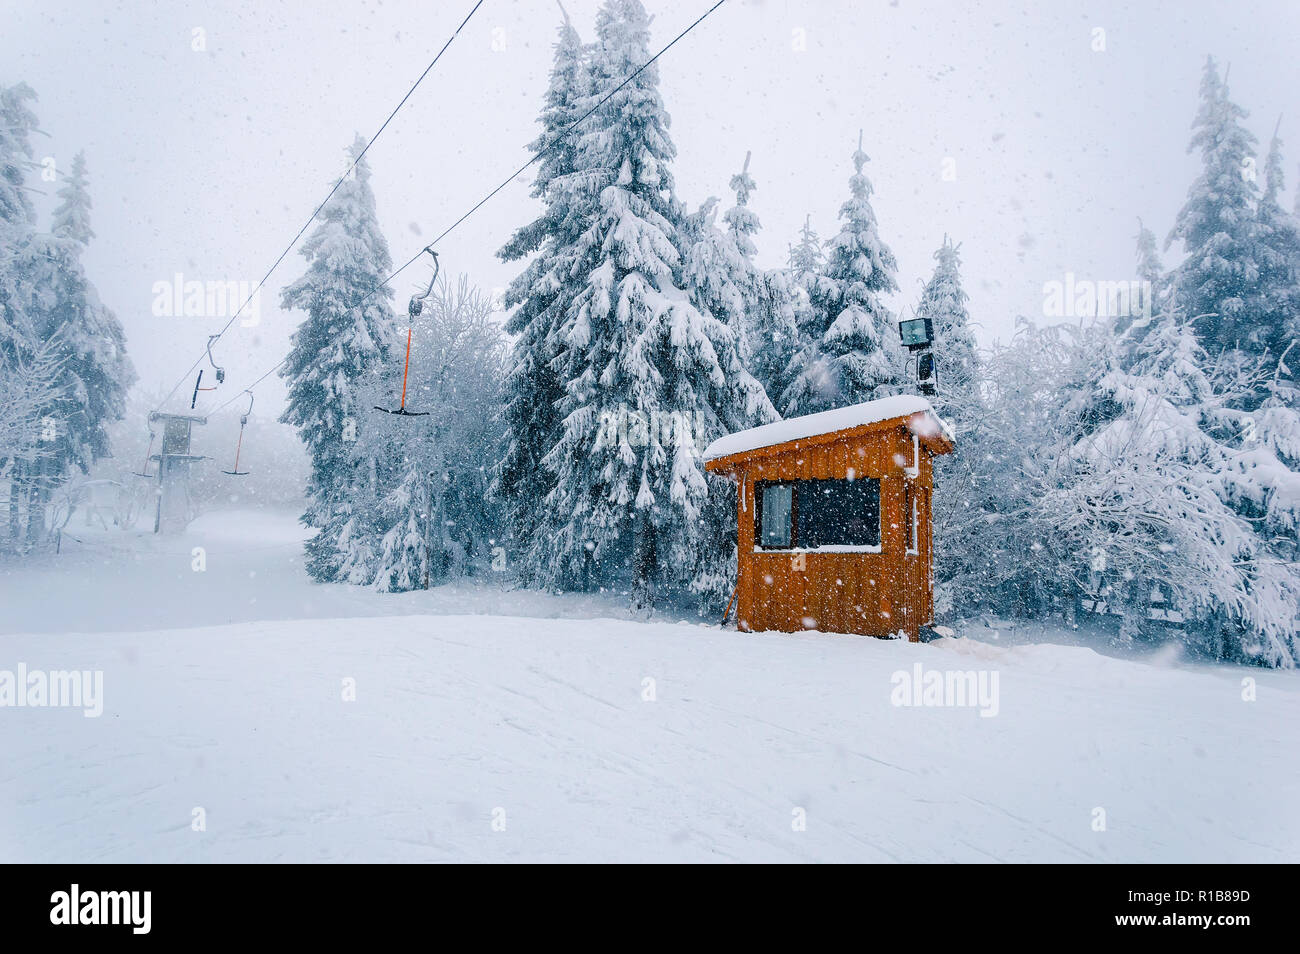 Snowy ski area: svuotare T-bar ascensore e cabine in legno a cattivo tempo invernale con neve, vento e nebbia Foto Stock